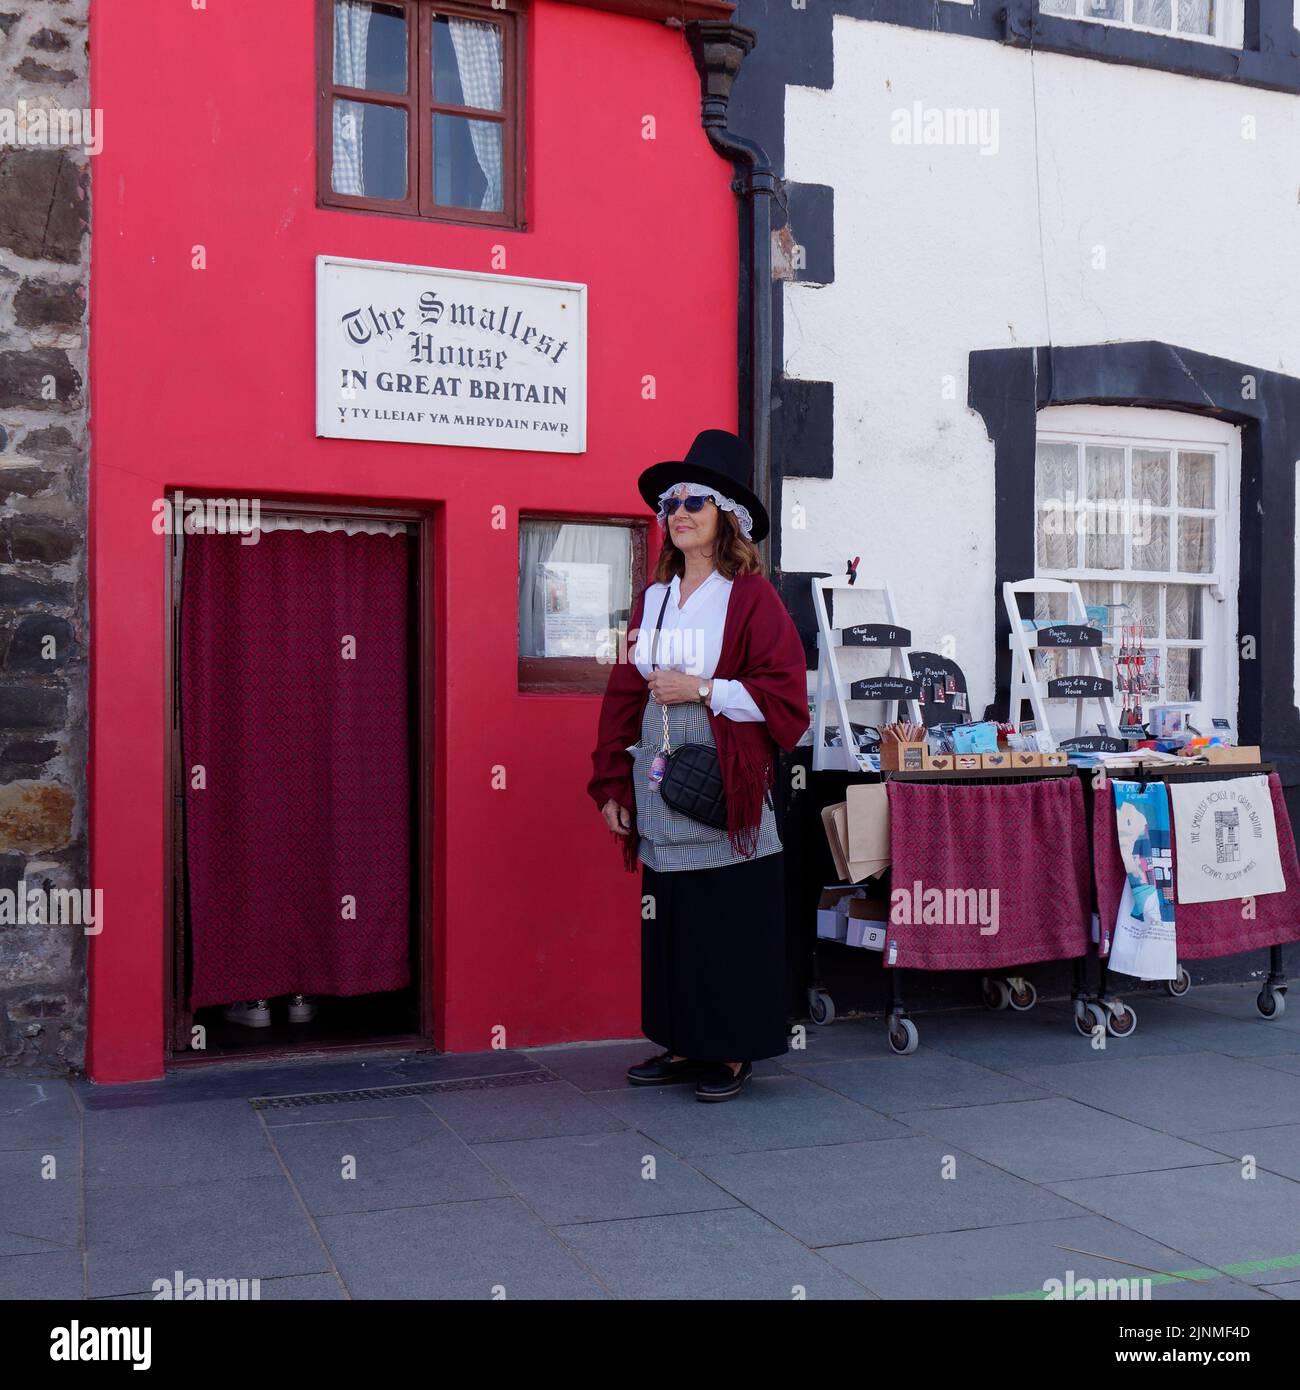 Conwy, Clwyd, pays de Galles, 07 août 2022: La dame dans un chapeau se tient à l'extérieur de la plus petite maison de Grande-Bretagne. Banque D'Images